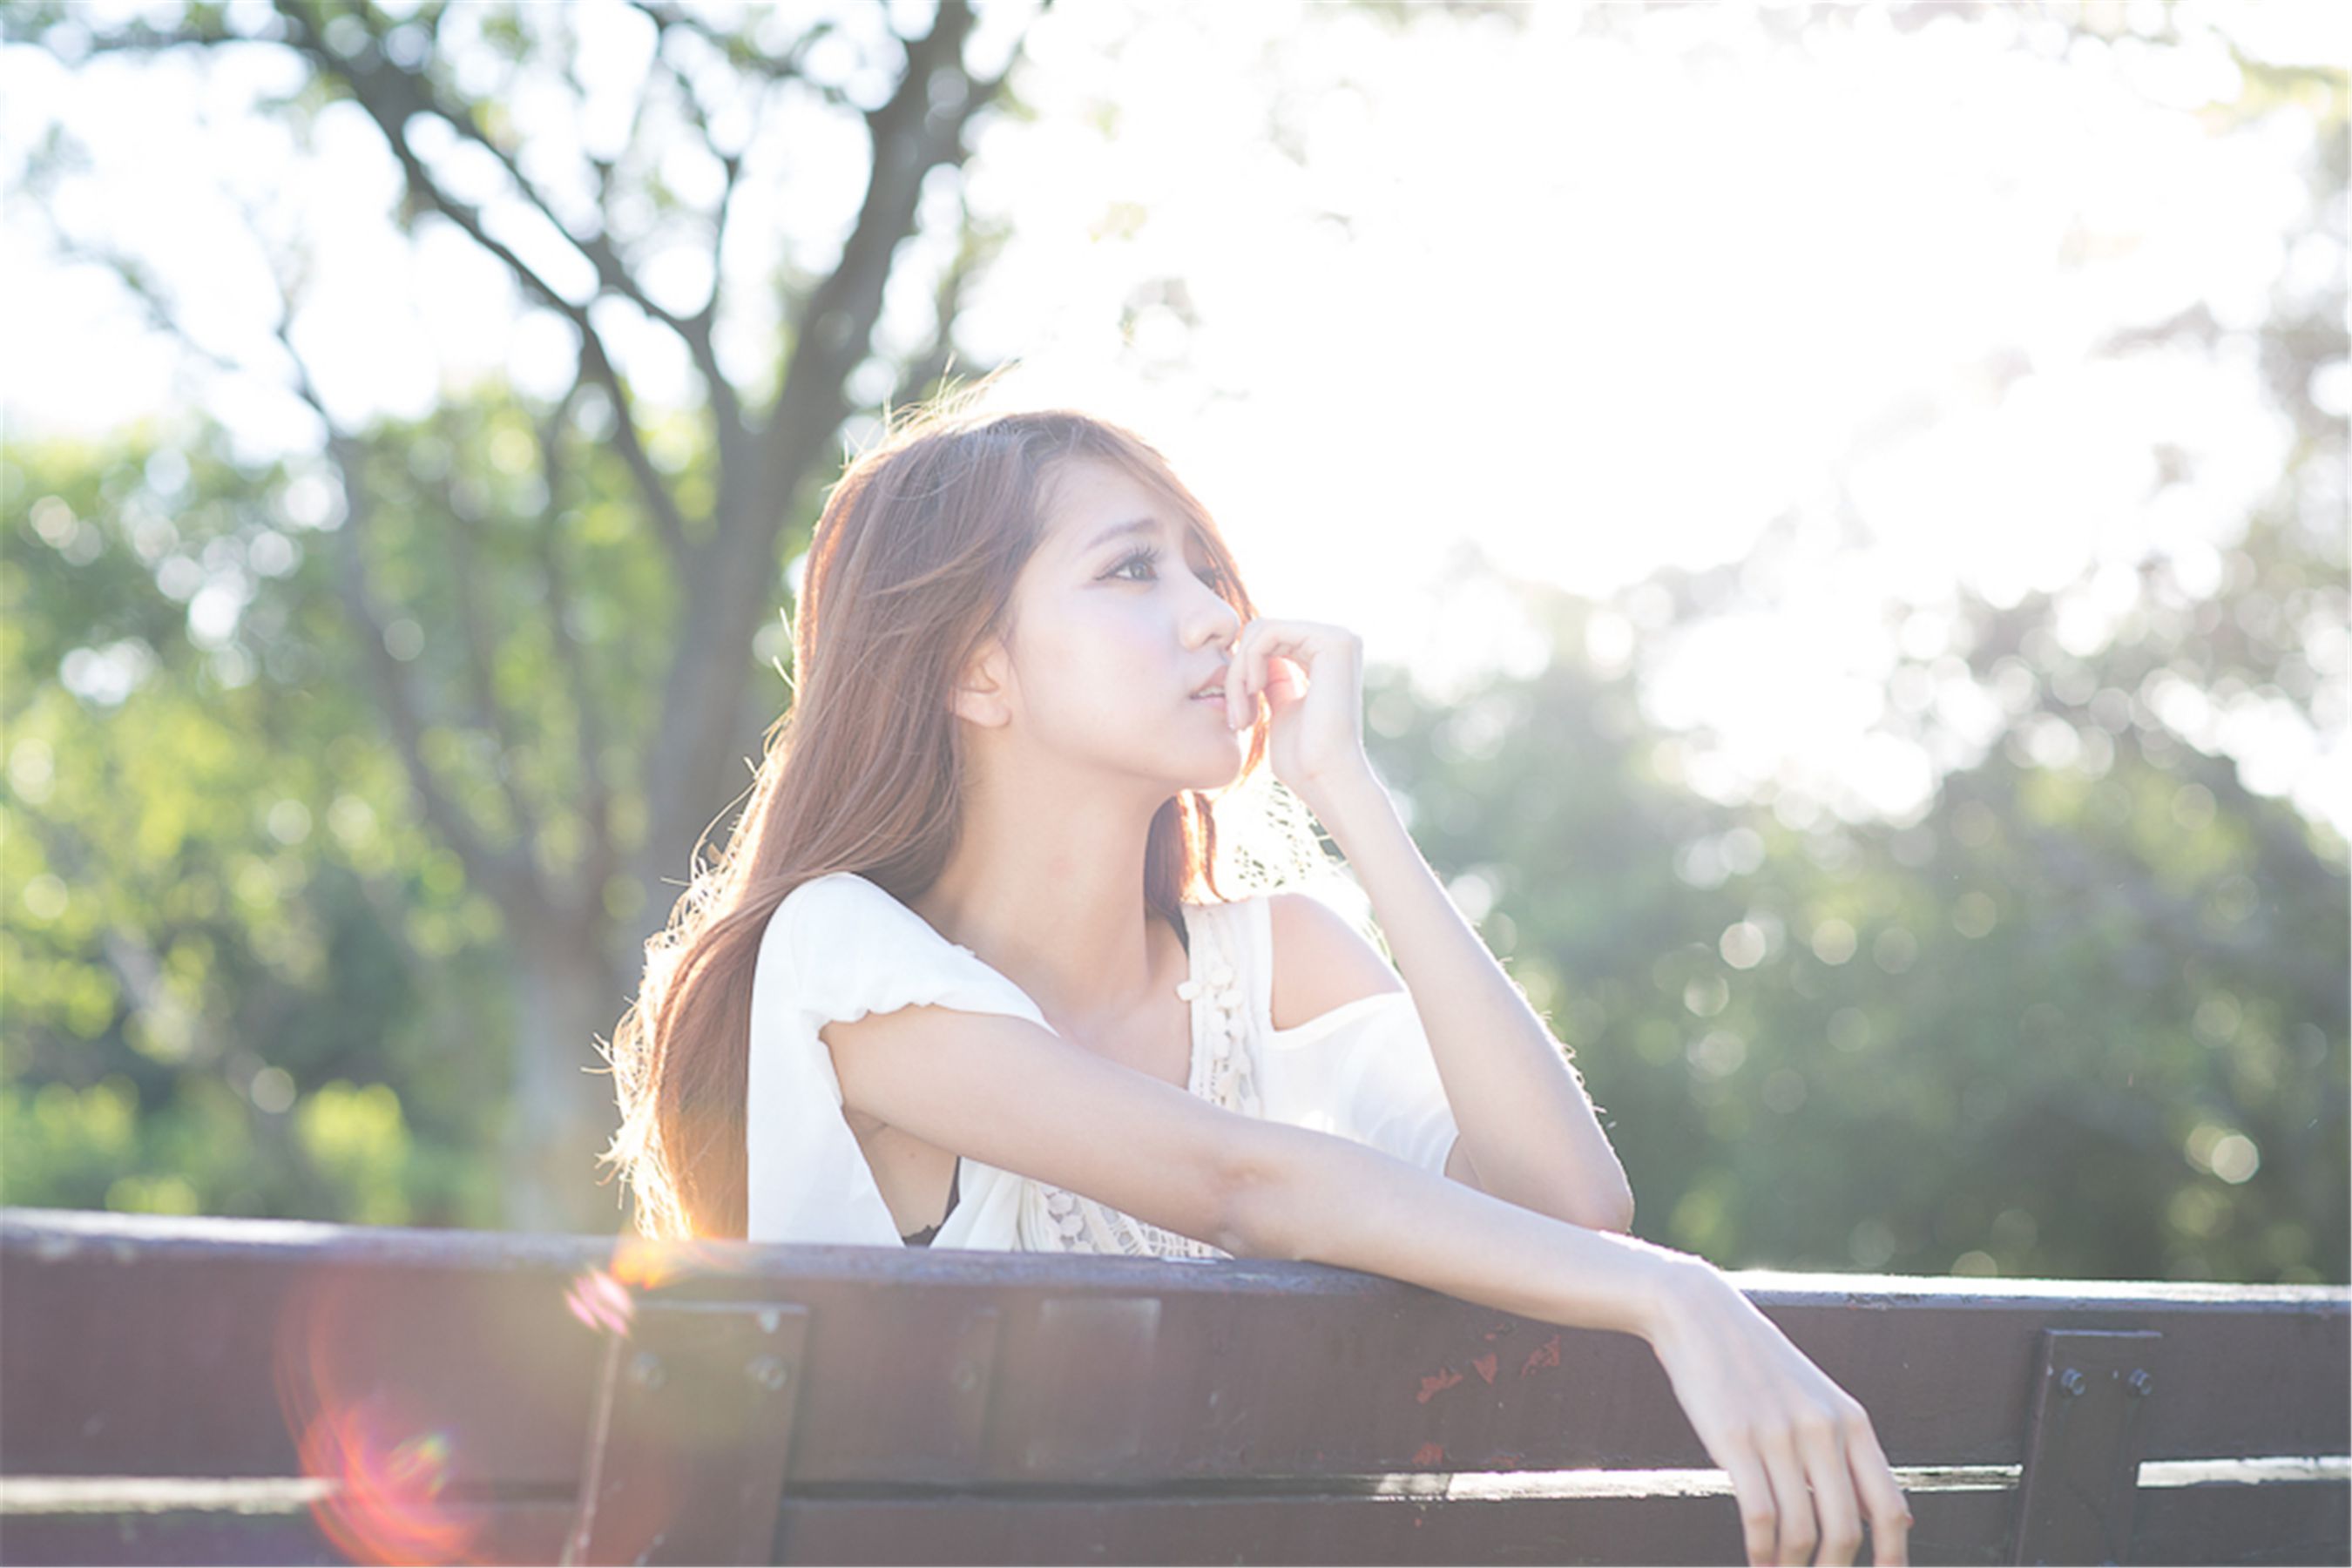 Taiwan beauty 妍安 / Lu Yizhen “Da’an Forest Park Out” Photo Album